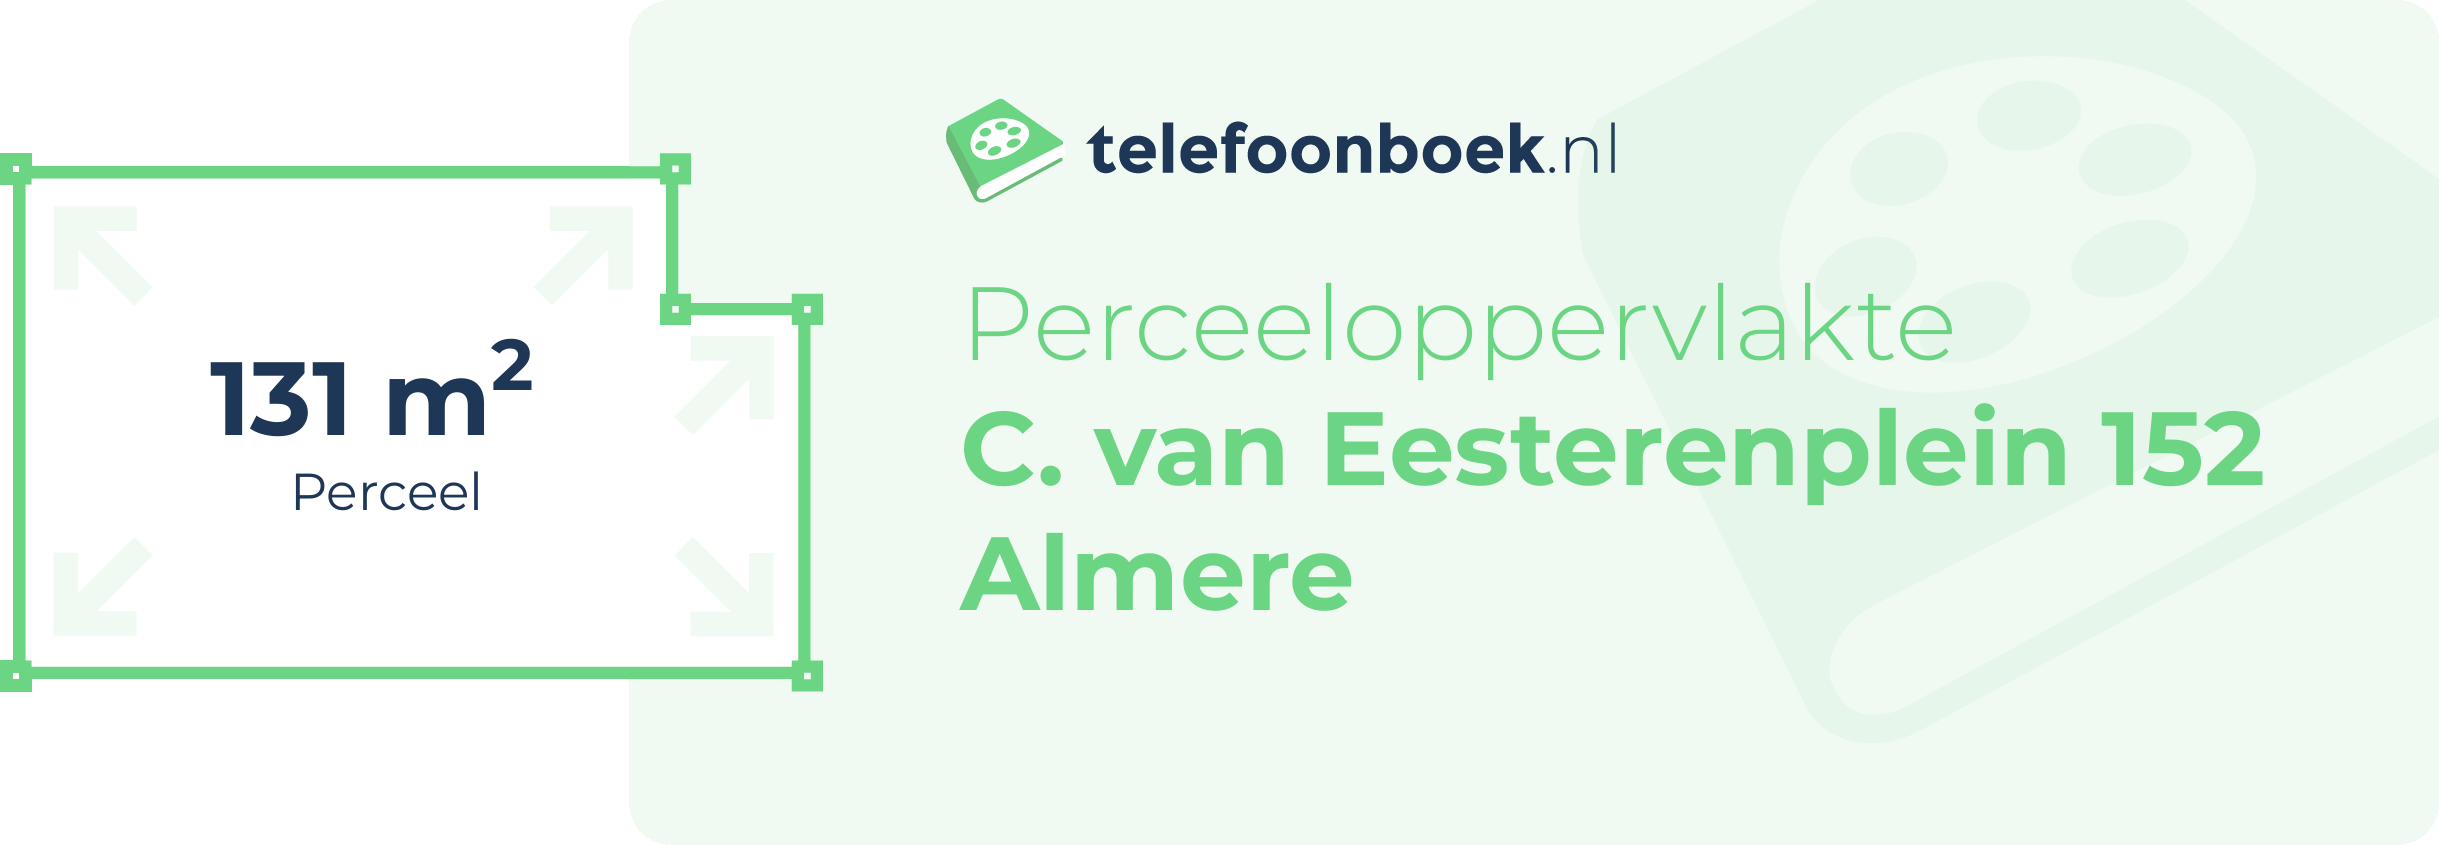 Perceeloppervlakte C. Van Eesterenplein 152 Almere